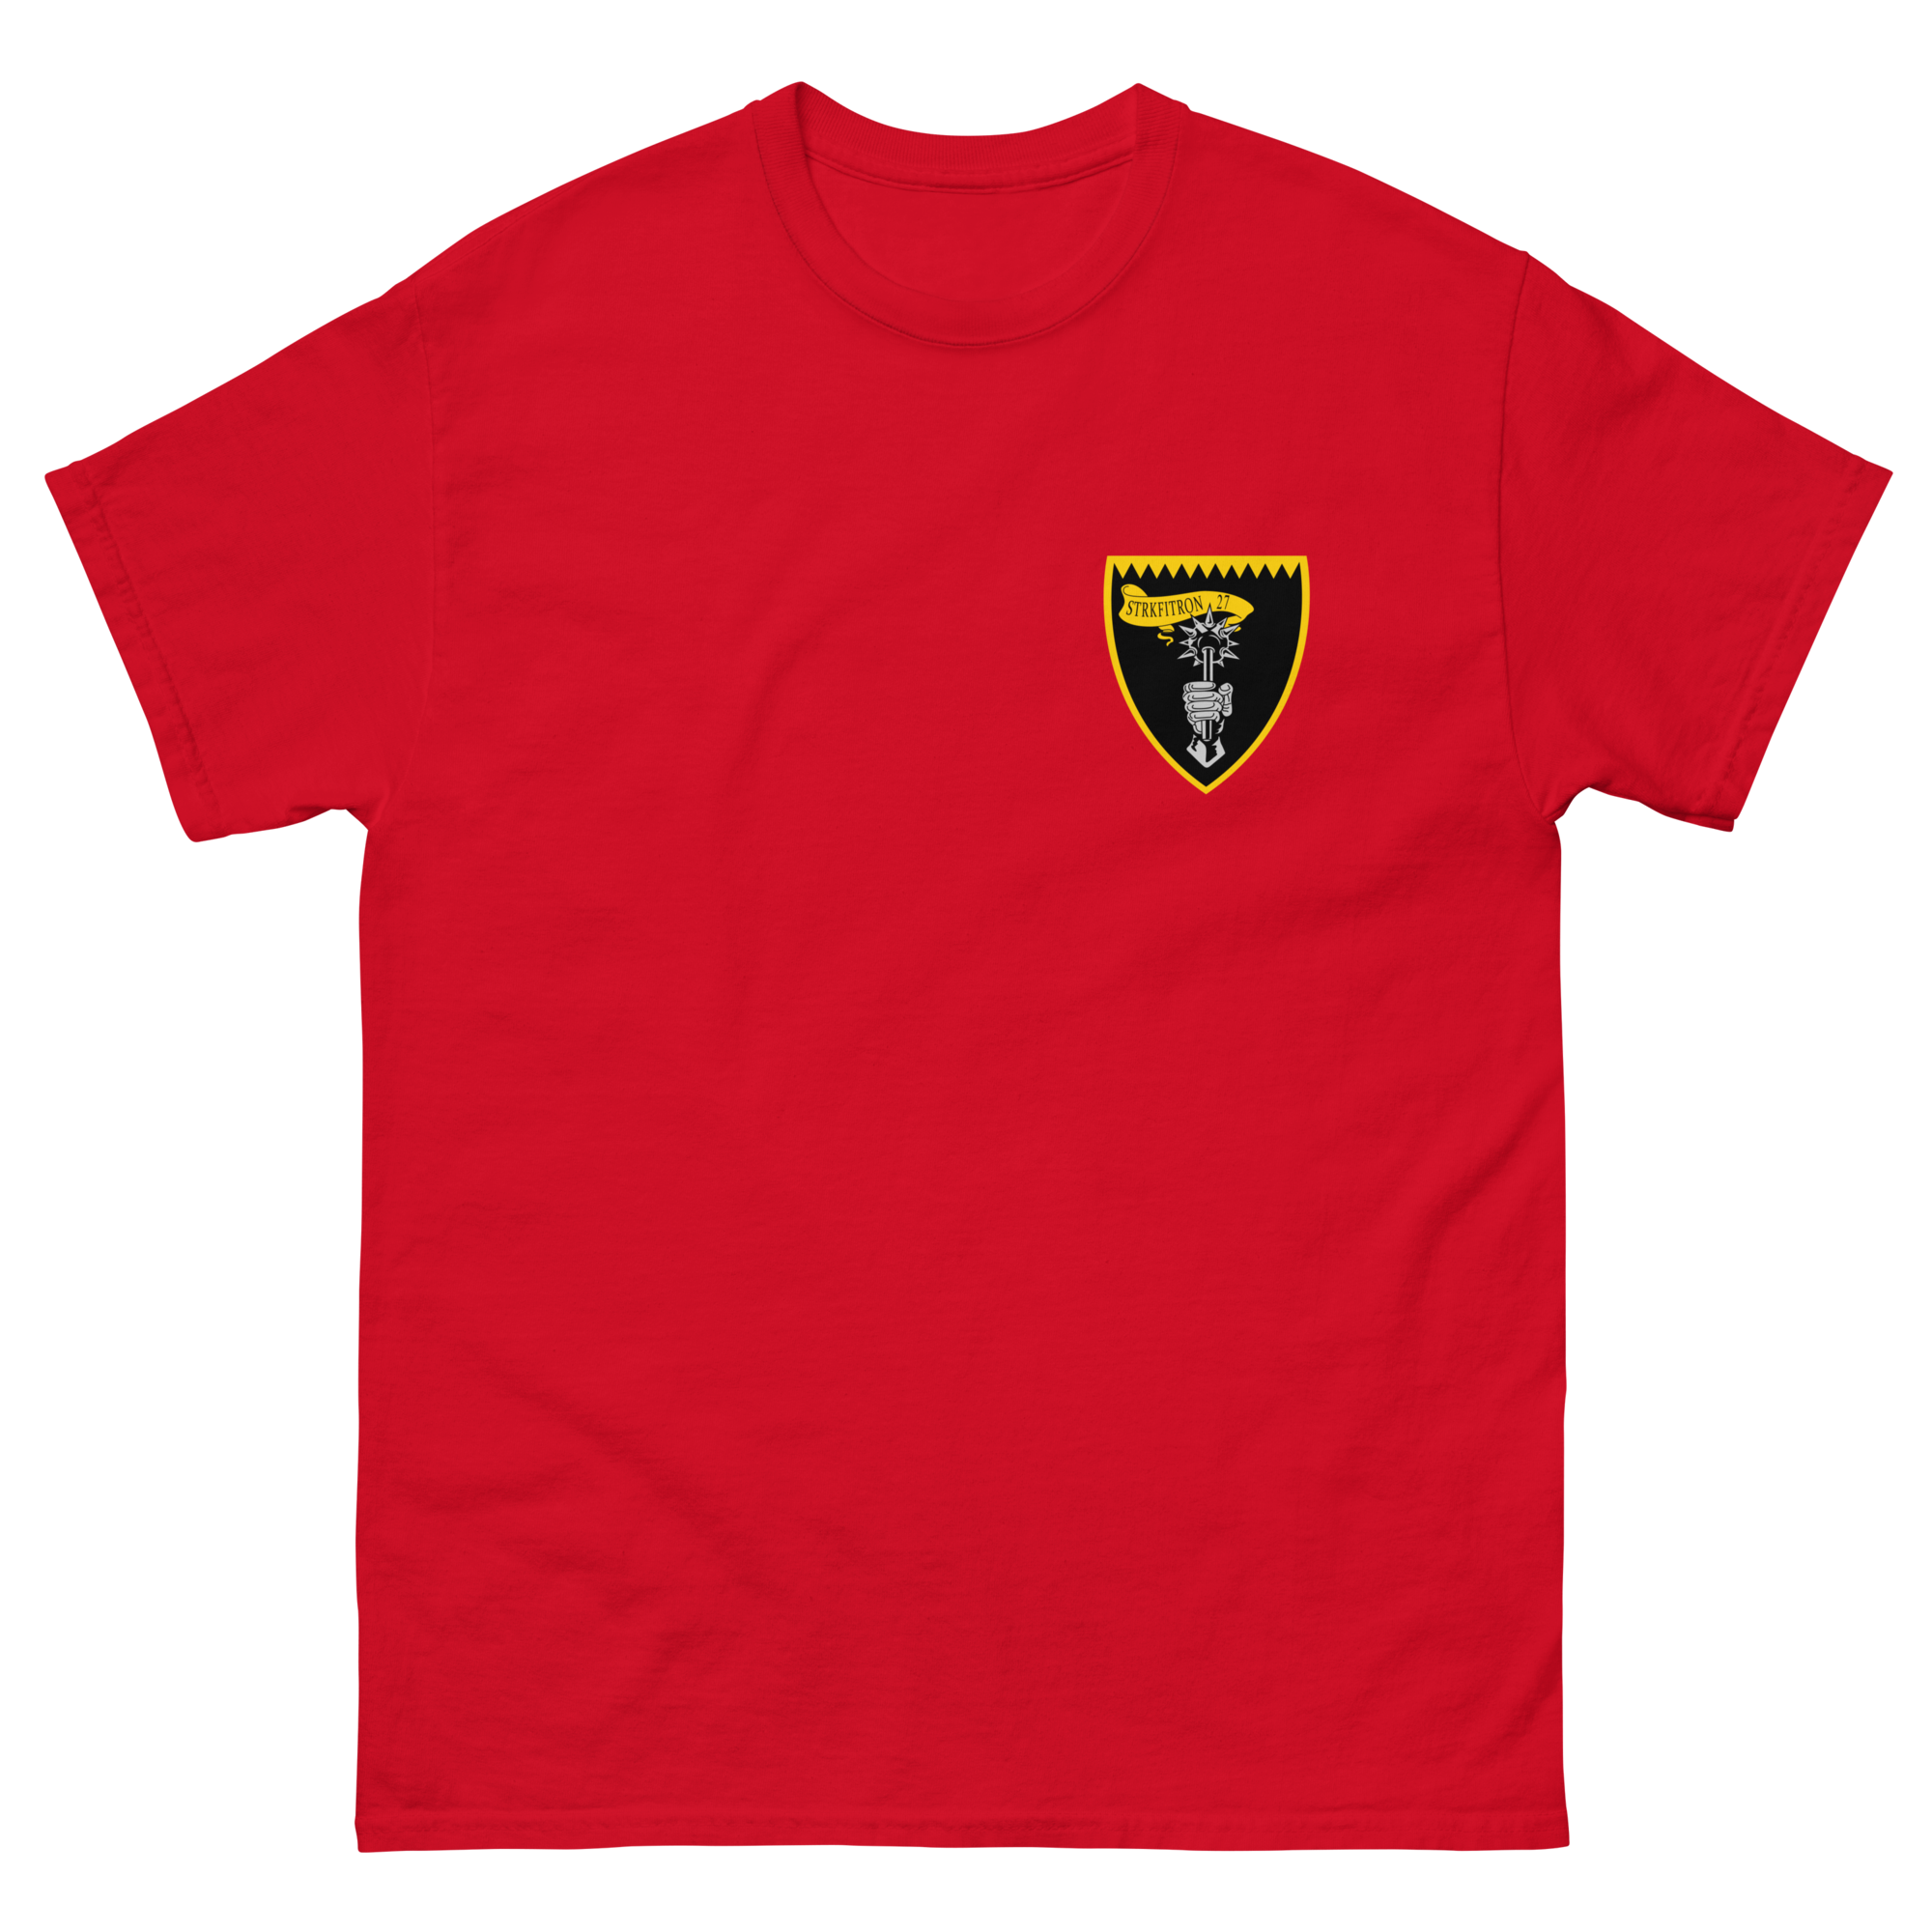 VFA-27 Royal Maces Squadron Crest T-Shirt